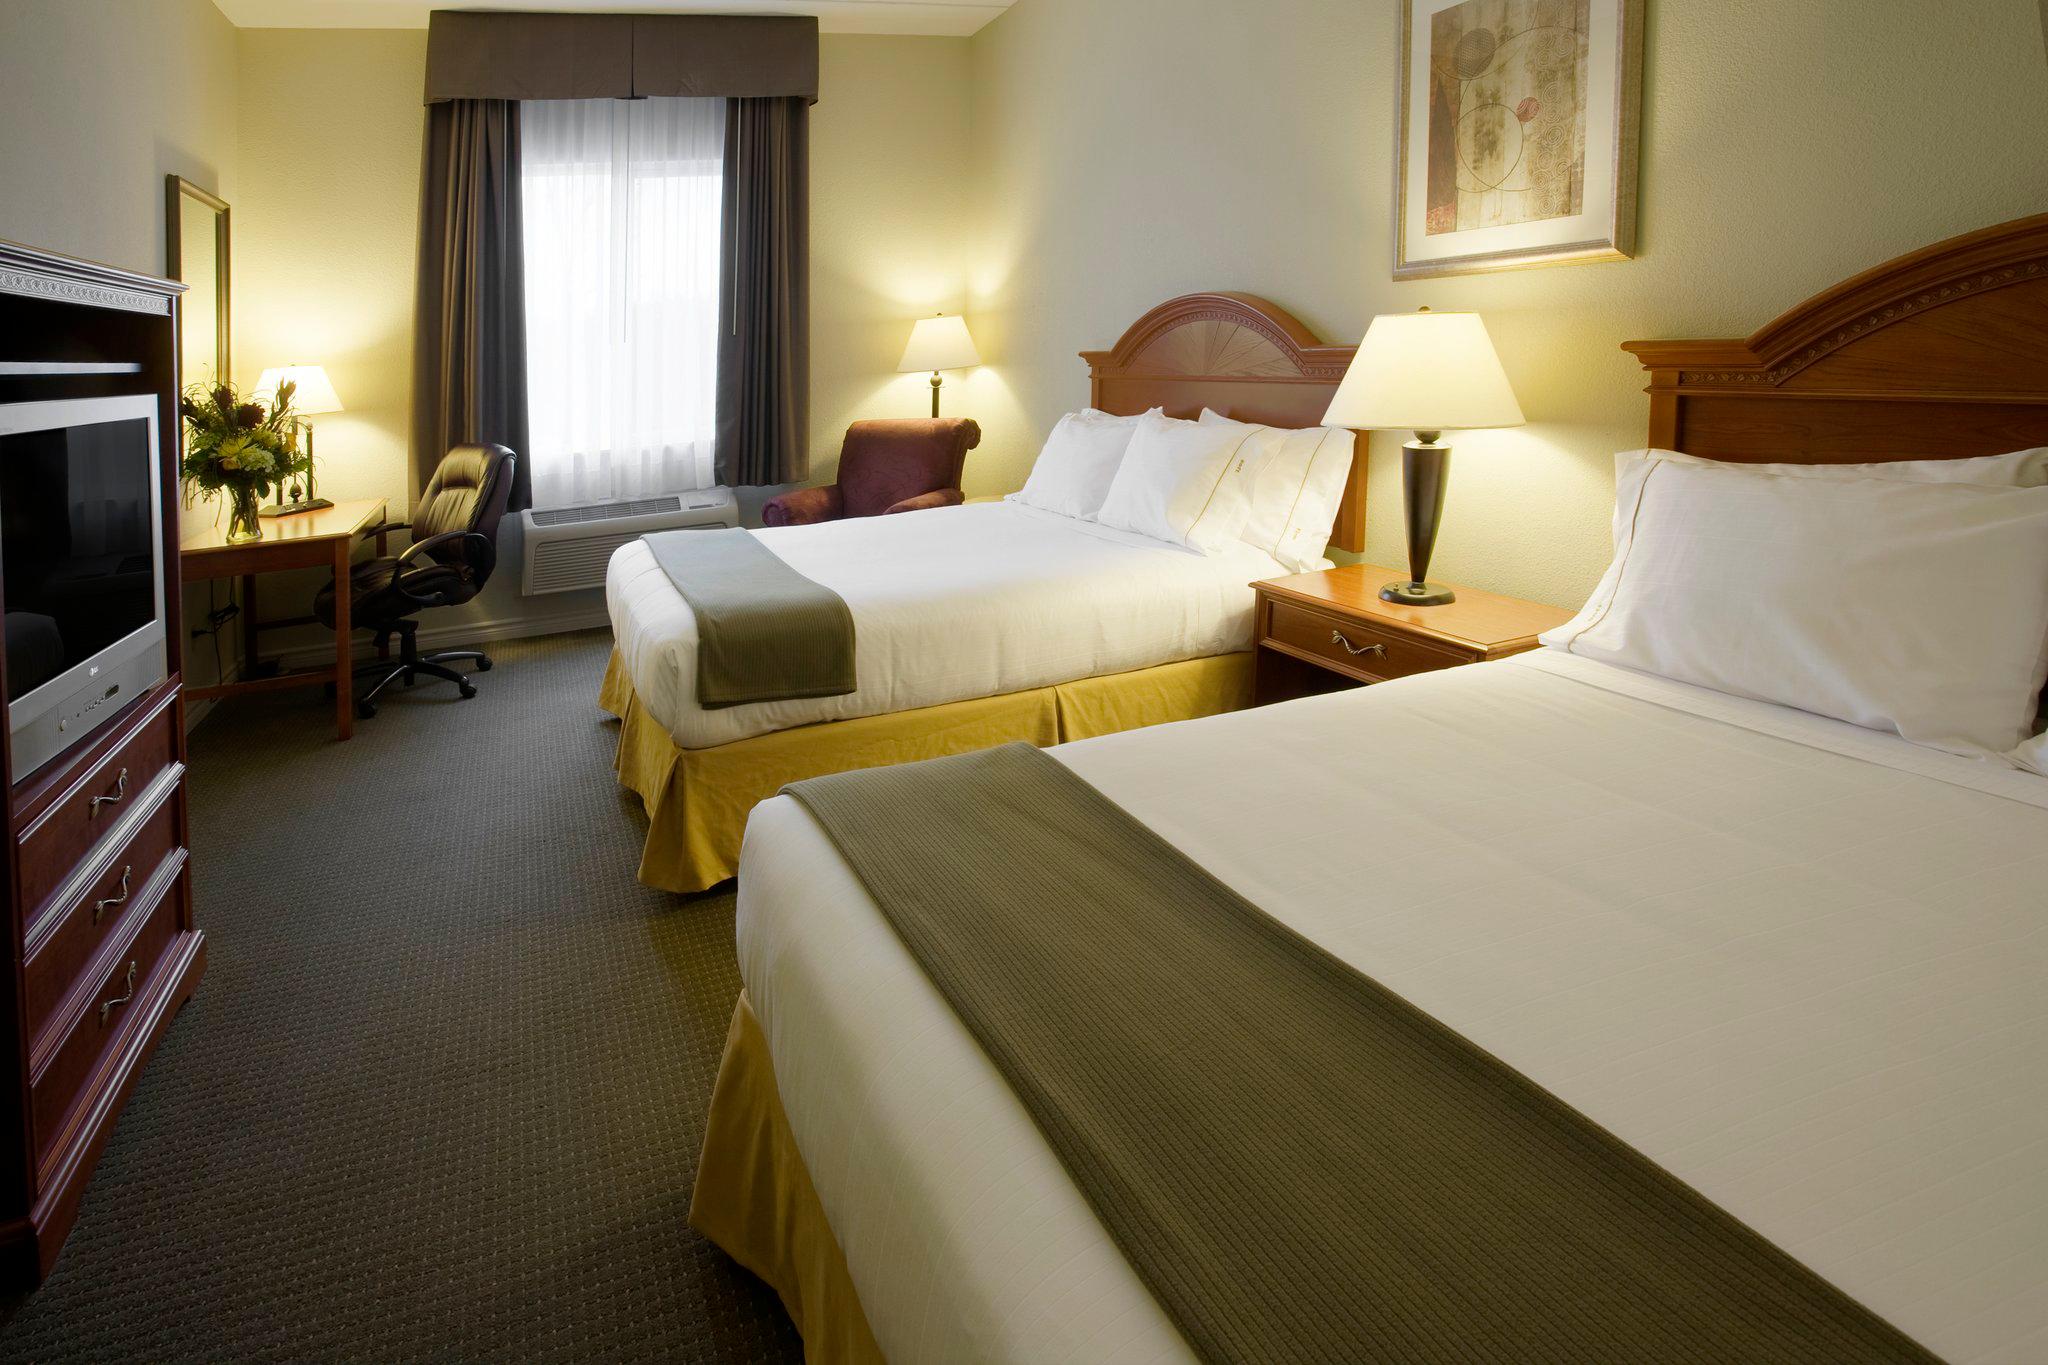 Holiday Inn Express & Suites 1000 Islands - Gananoque, an IHG Hotel Gananoque (613)382-8338